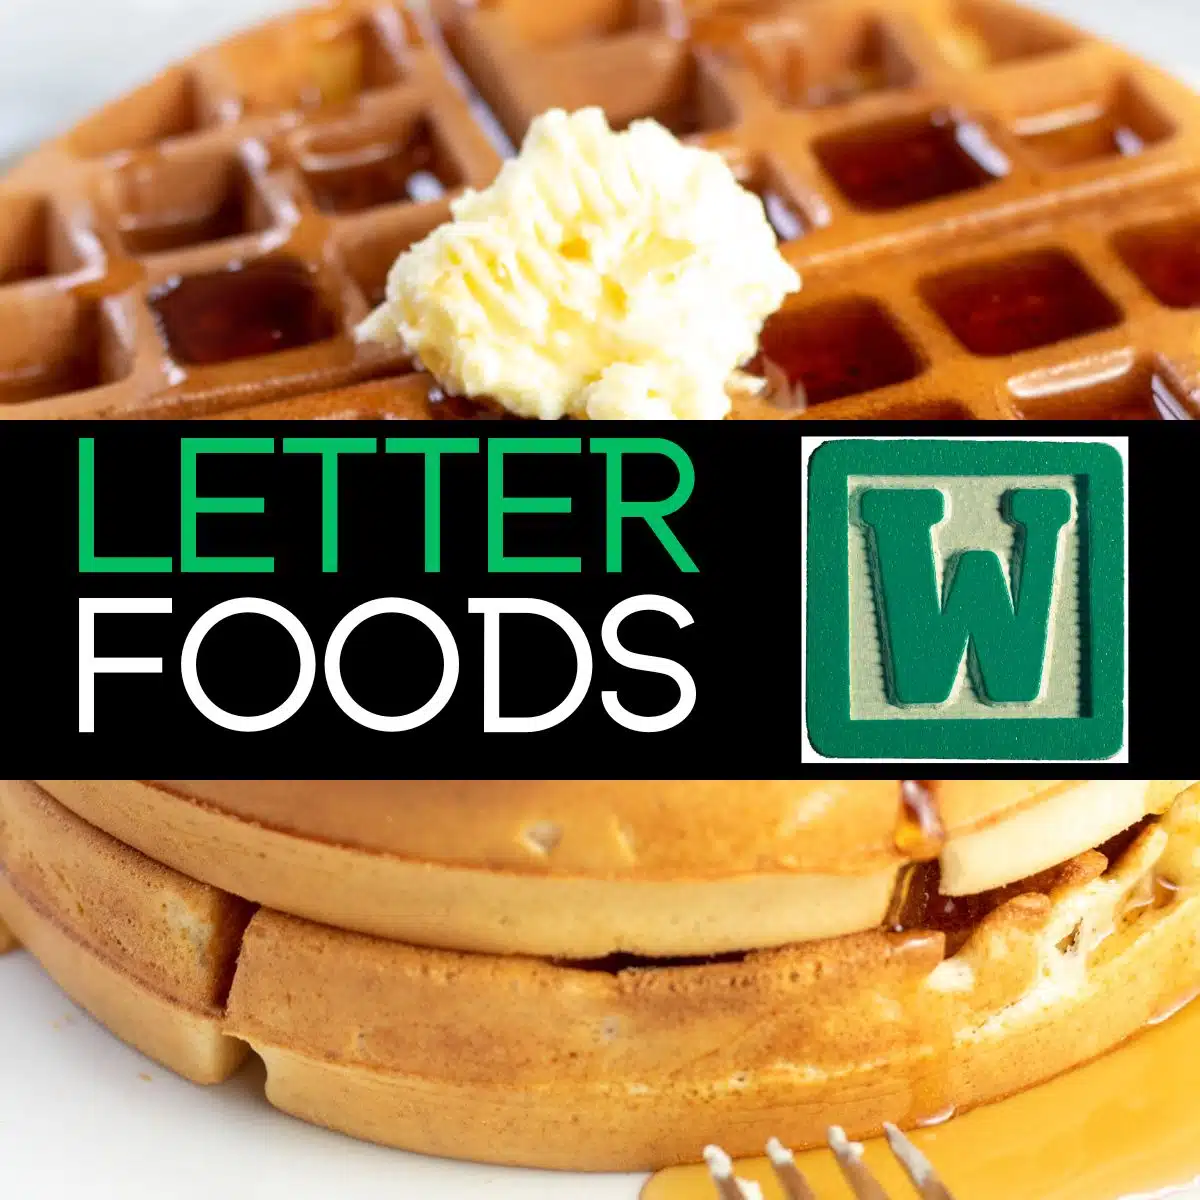 Fyrkantig bild med text för livsmedel som börjar med bokstaven w, med våfflor på bilden.